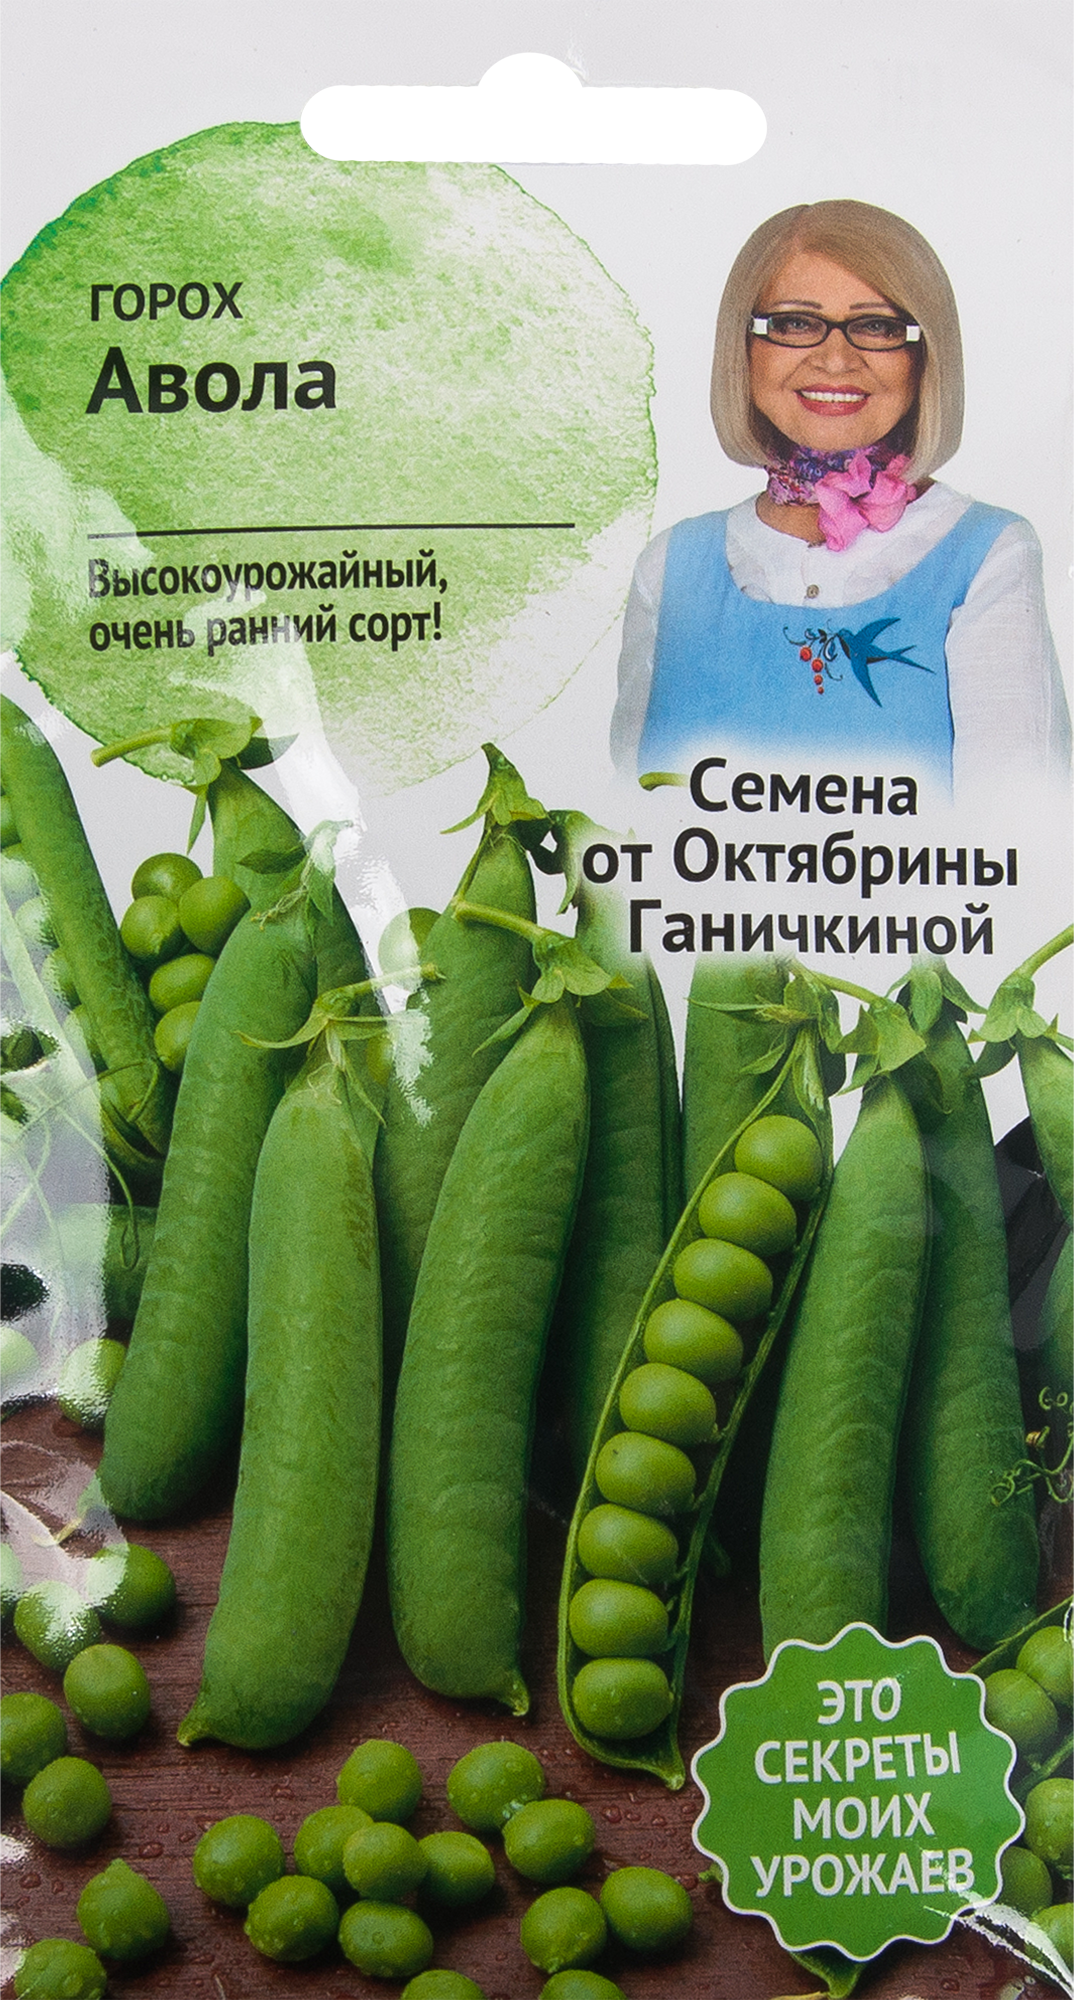 Семена Горох «Авола» 10 г в Калининграде – купить по низкой цене винтернет-магазине Леруа Мерлен